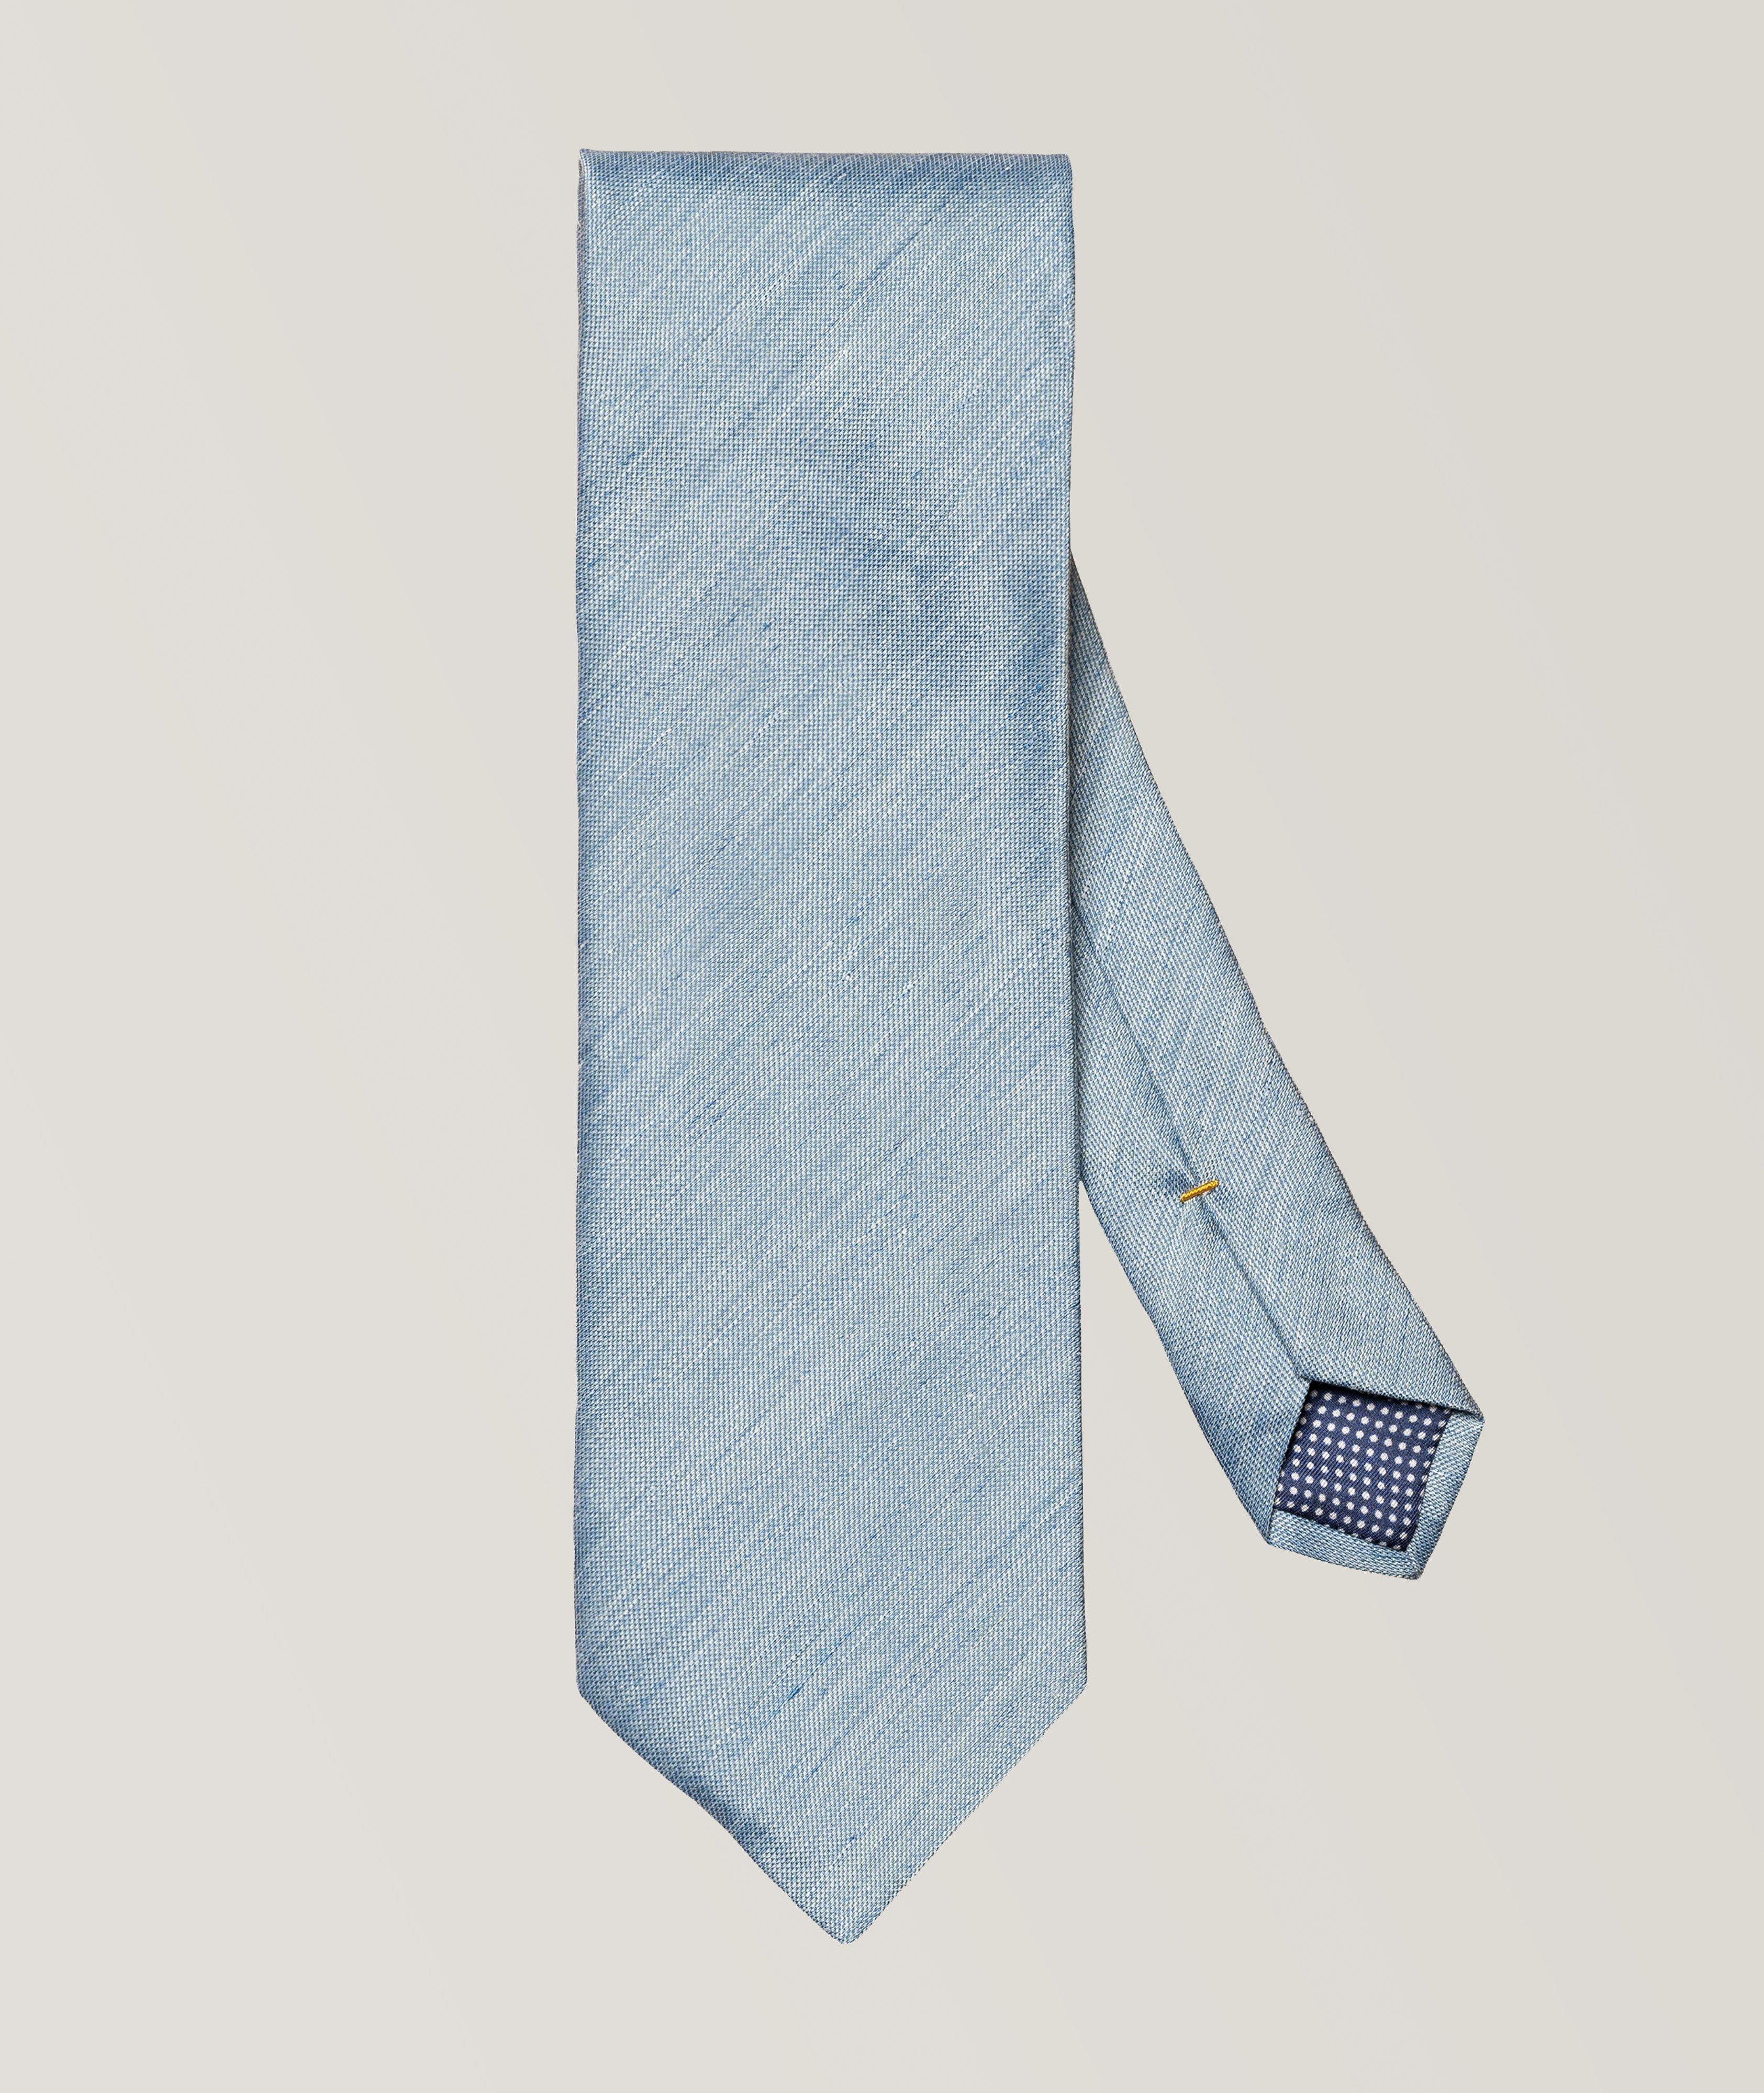 Cravate unie en soie et en lin image 0